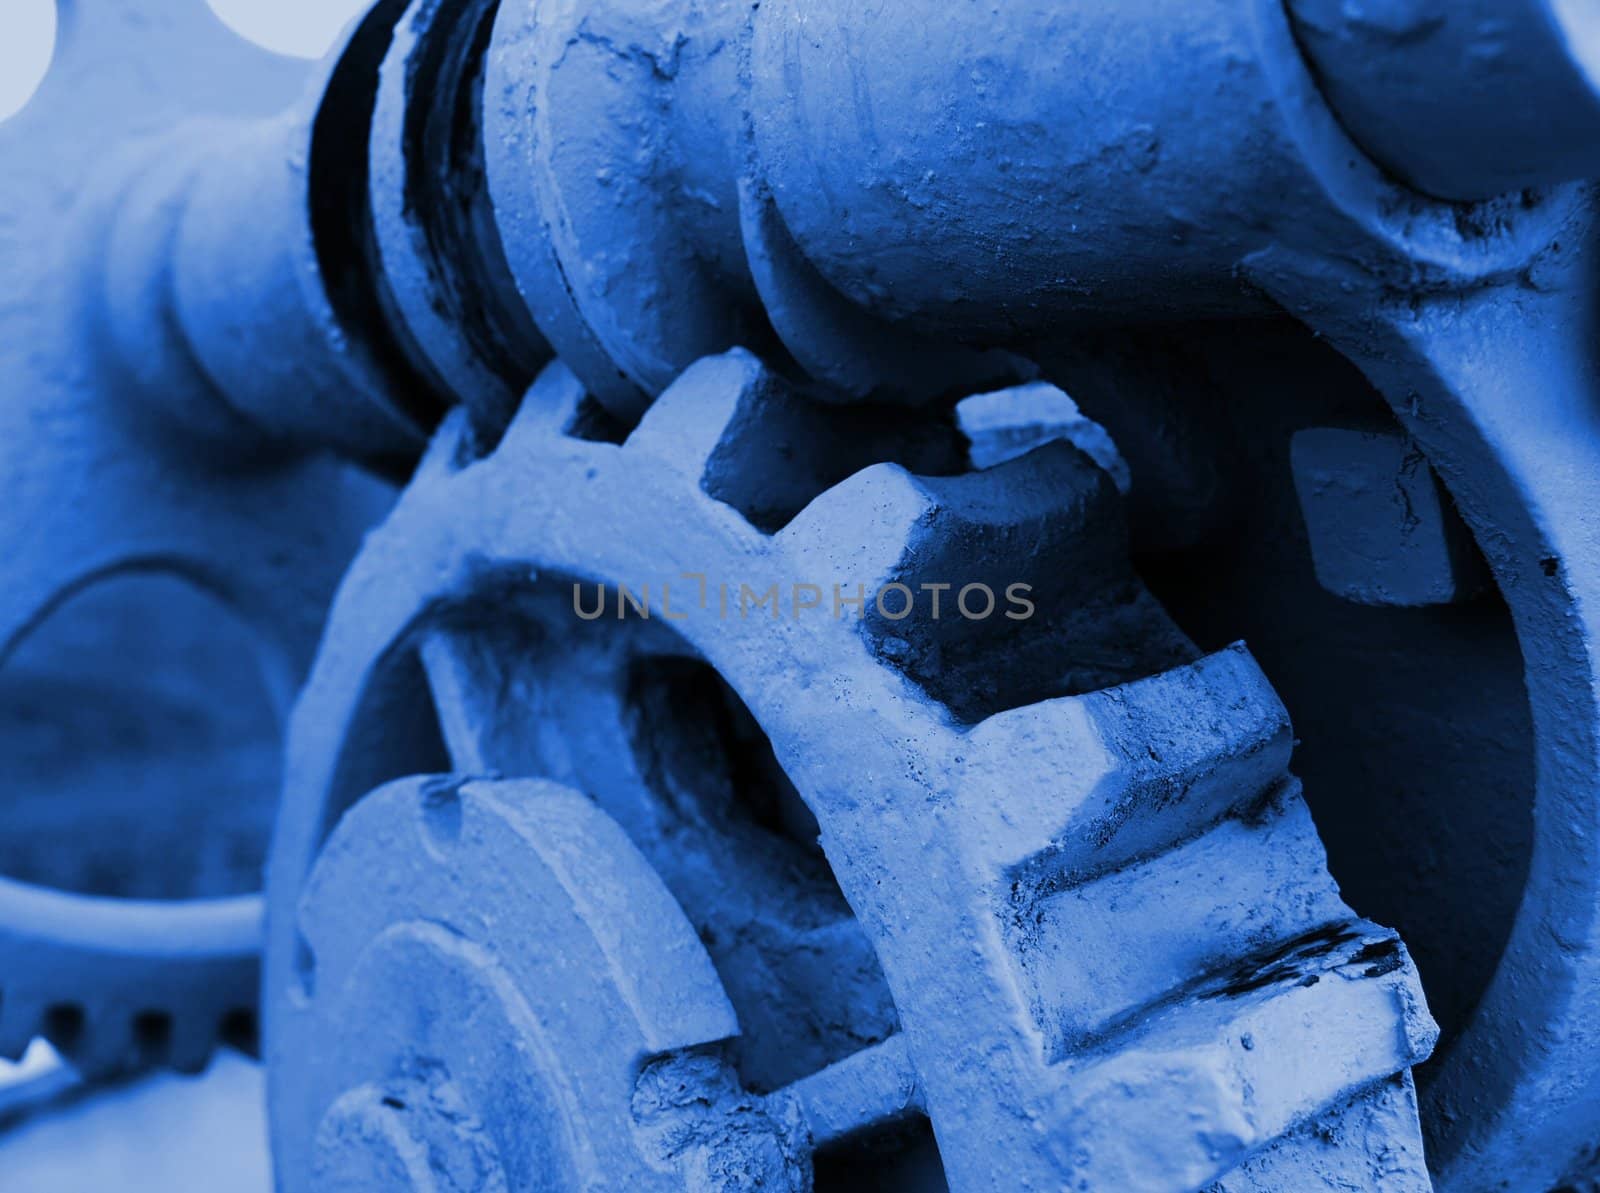 Cogwheels in a machinery in blue tone